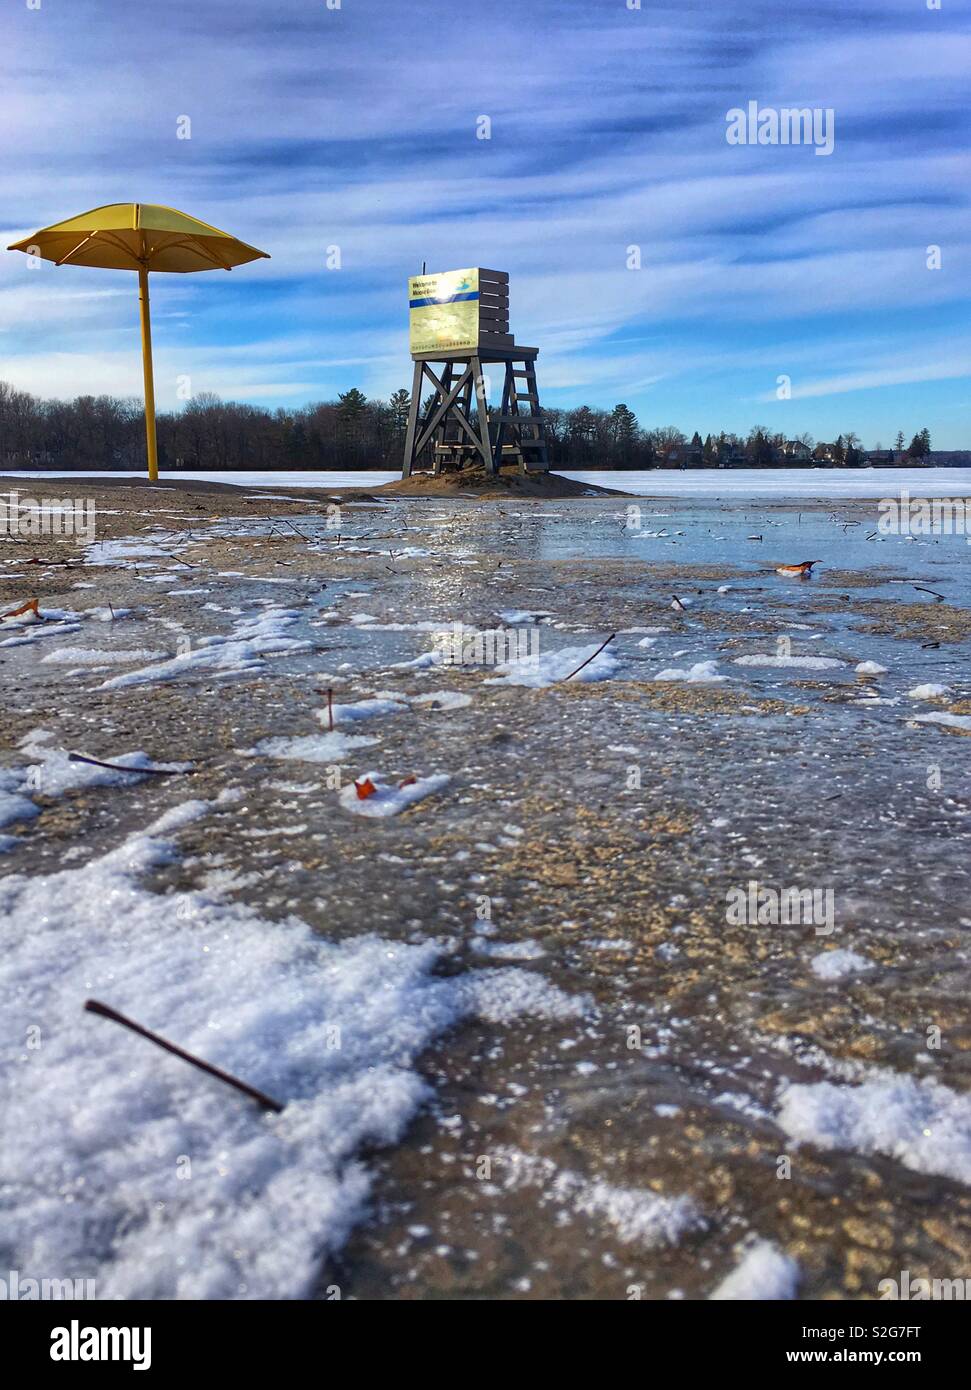 Plage d'hiver, parapluie, secours, lac gelé, et le reflet dans l'accumulation d'eau sur la plage Banque D'Images